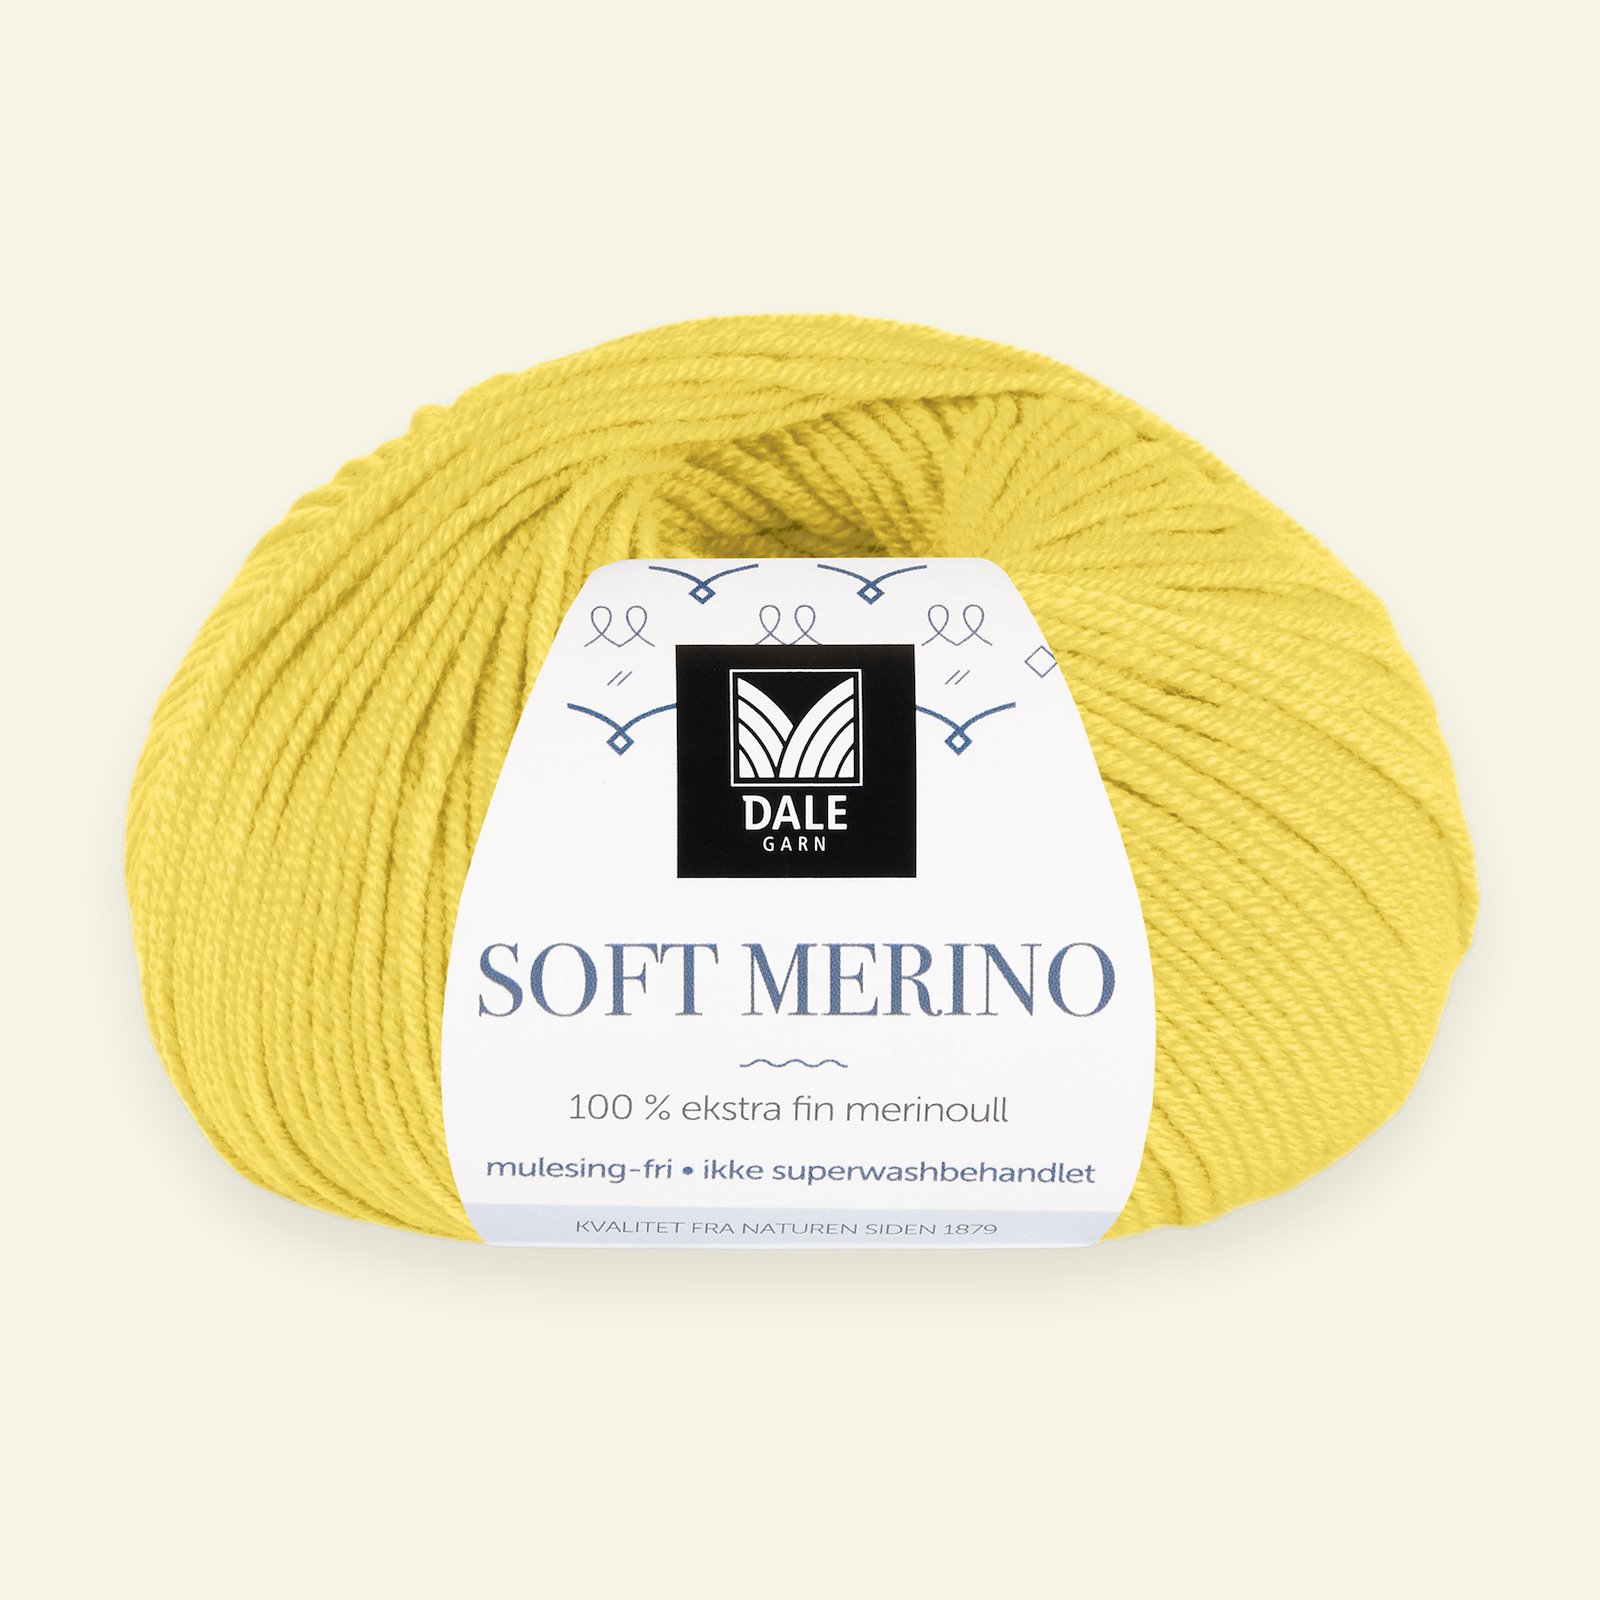 Dale Garn, 100% extra fine merino wool yarn, "Soft Merino", yellow (3029) 90000350_pack